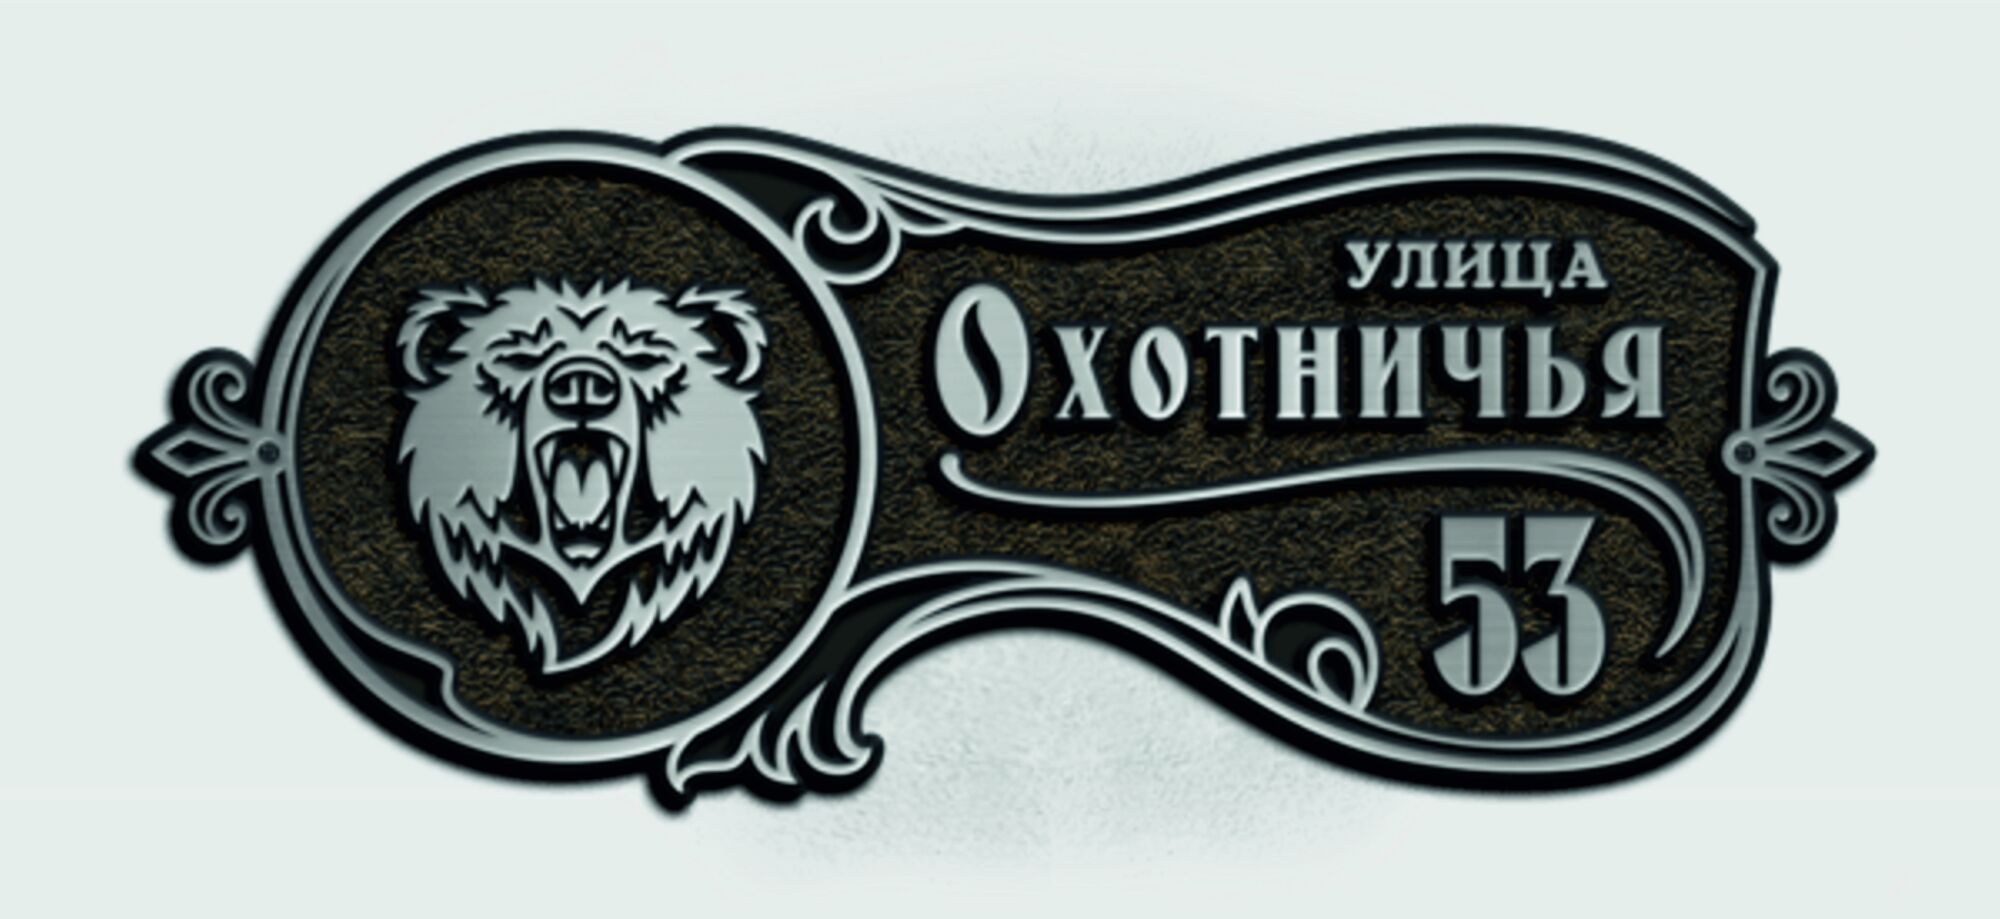 Адресная табличка М-2 (медведь, рысь, волк)